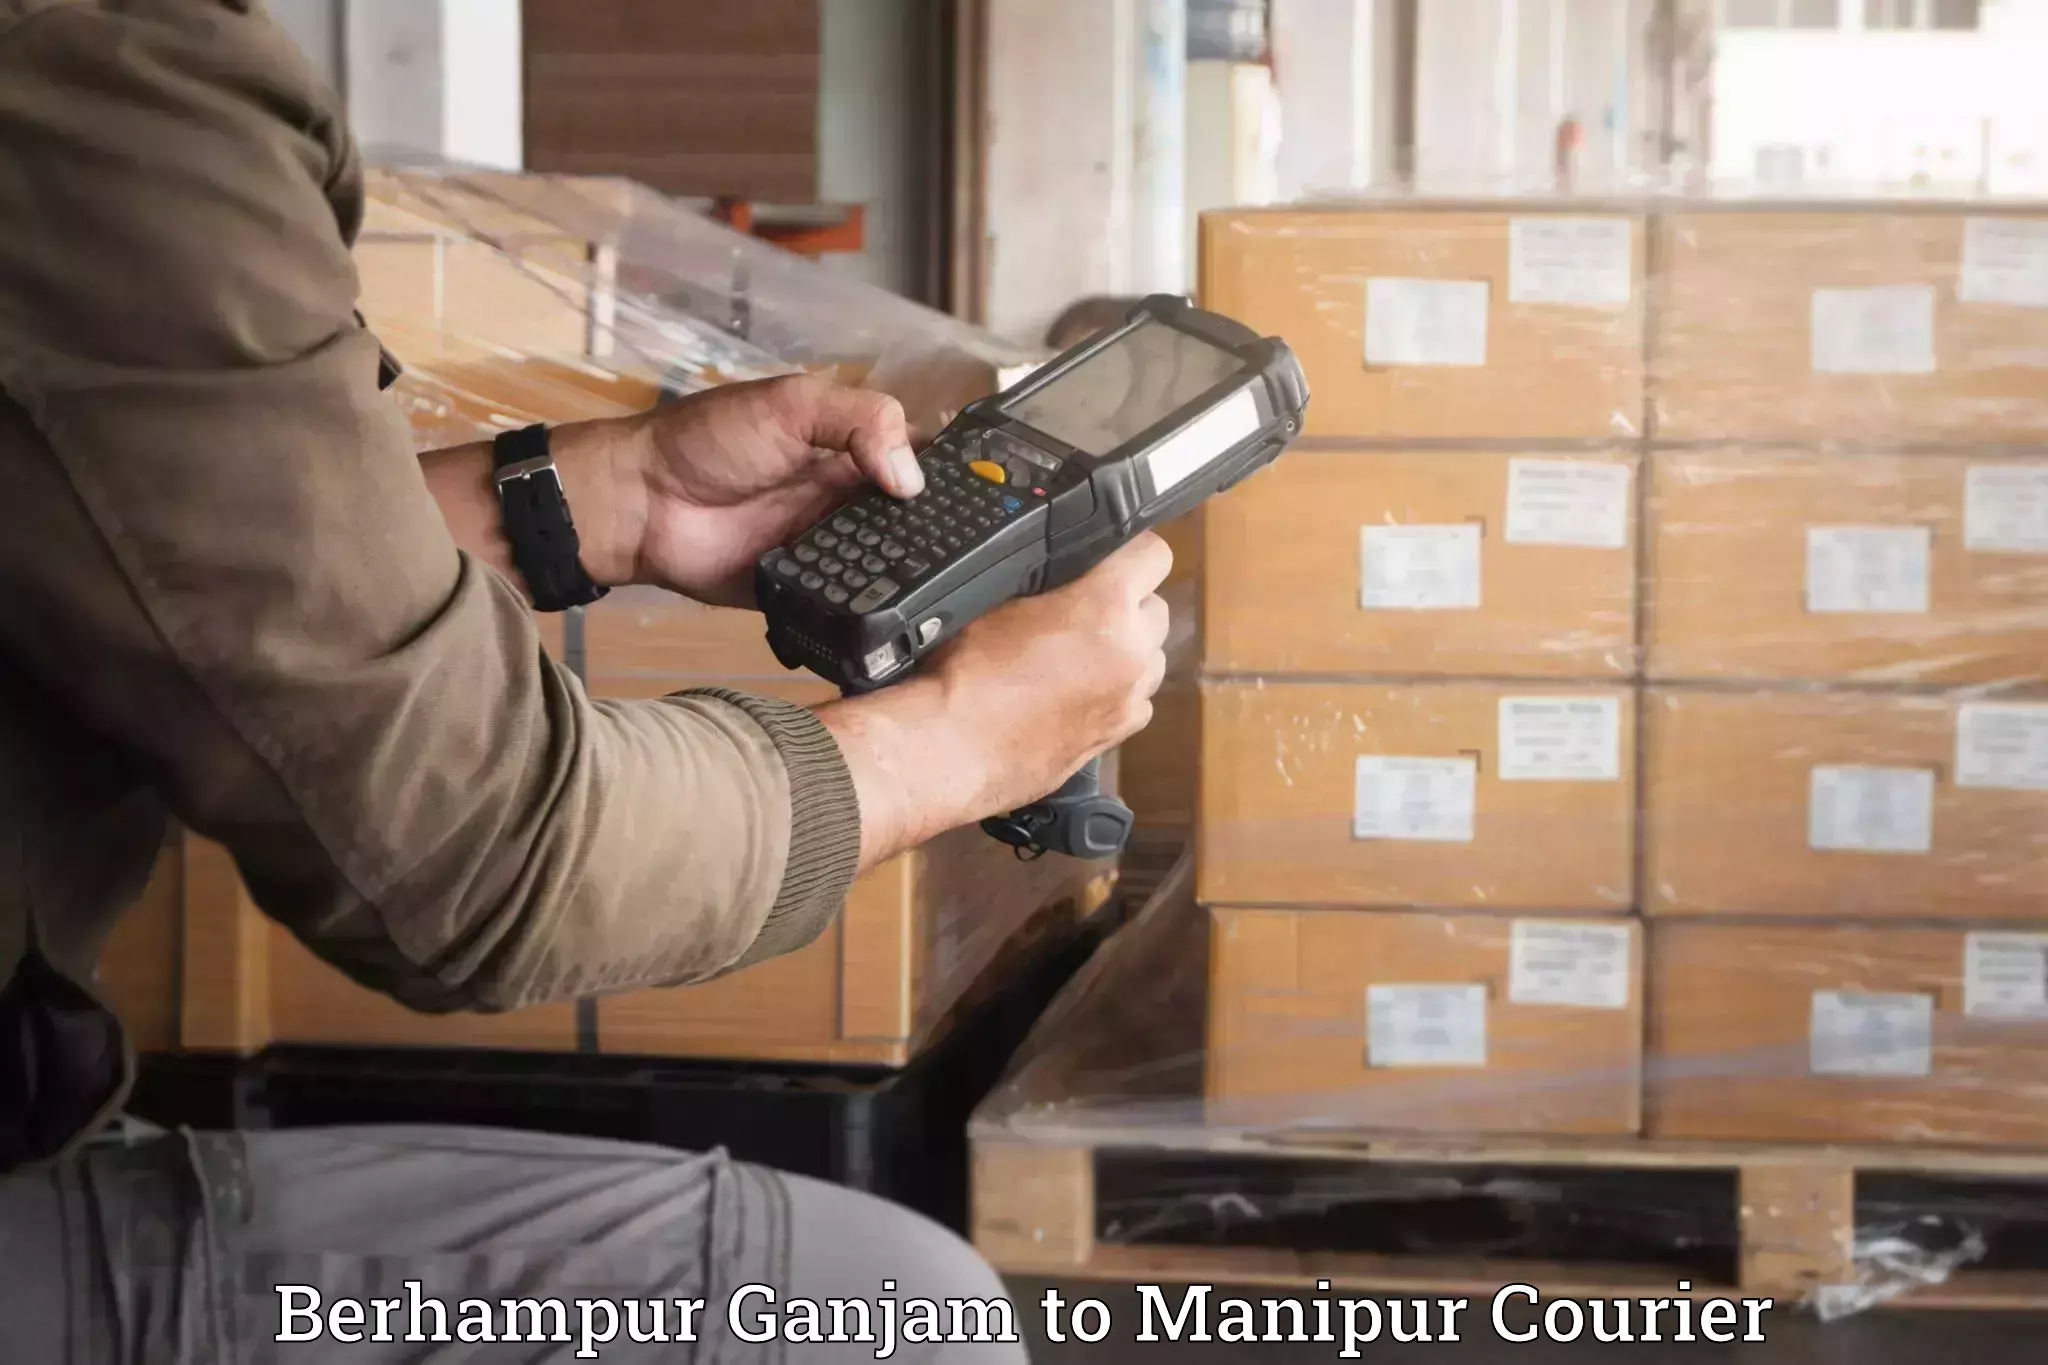 Furniture transport company Berhampur Ganjam to Manipur